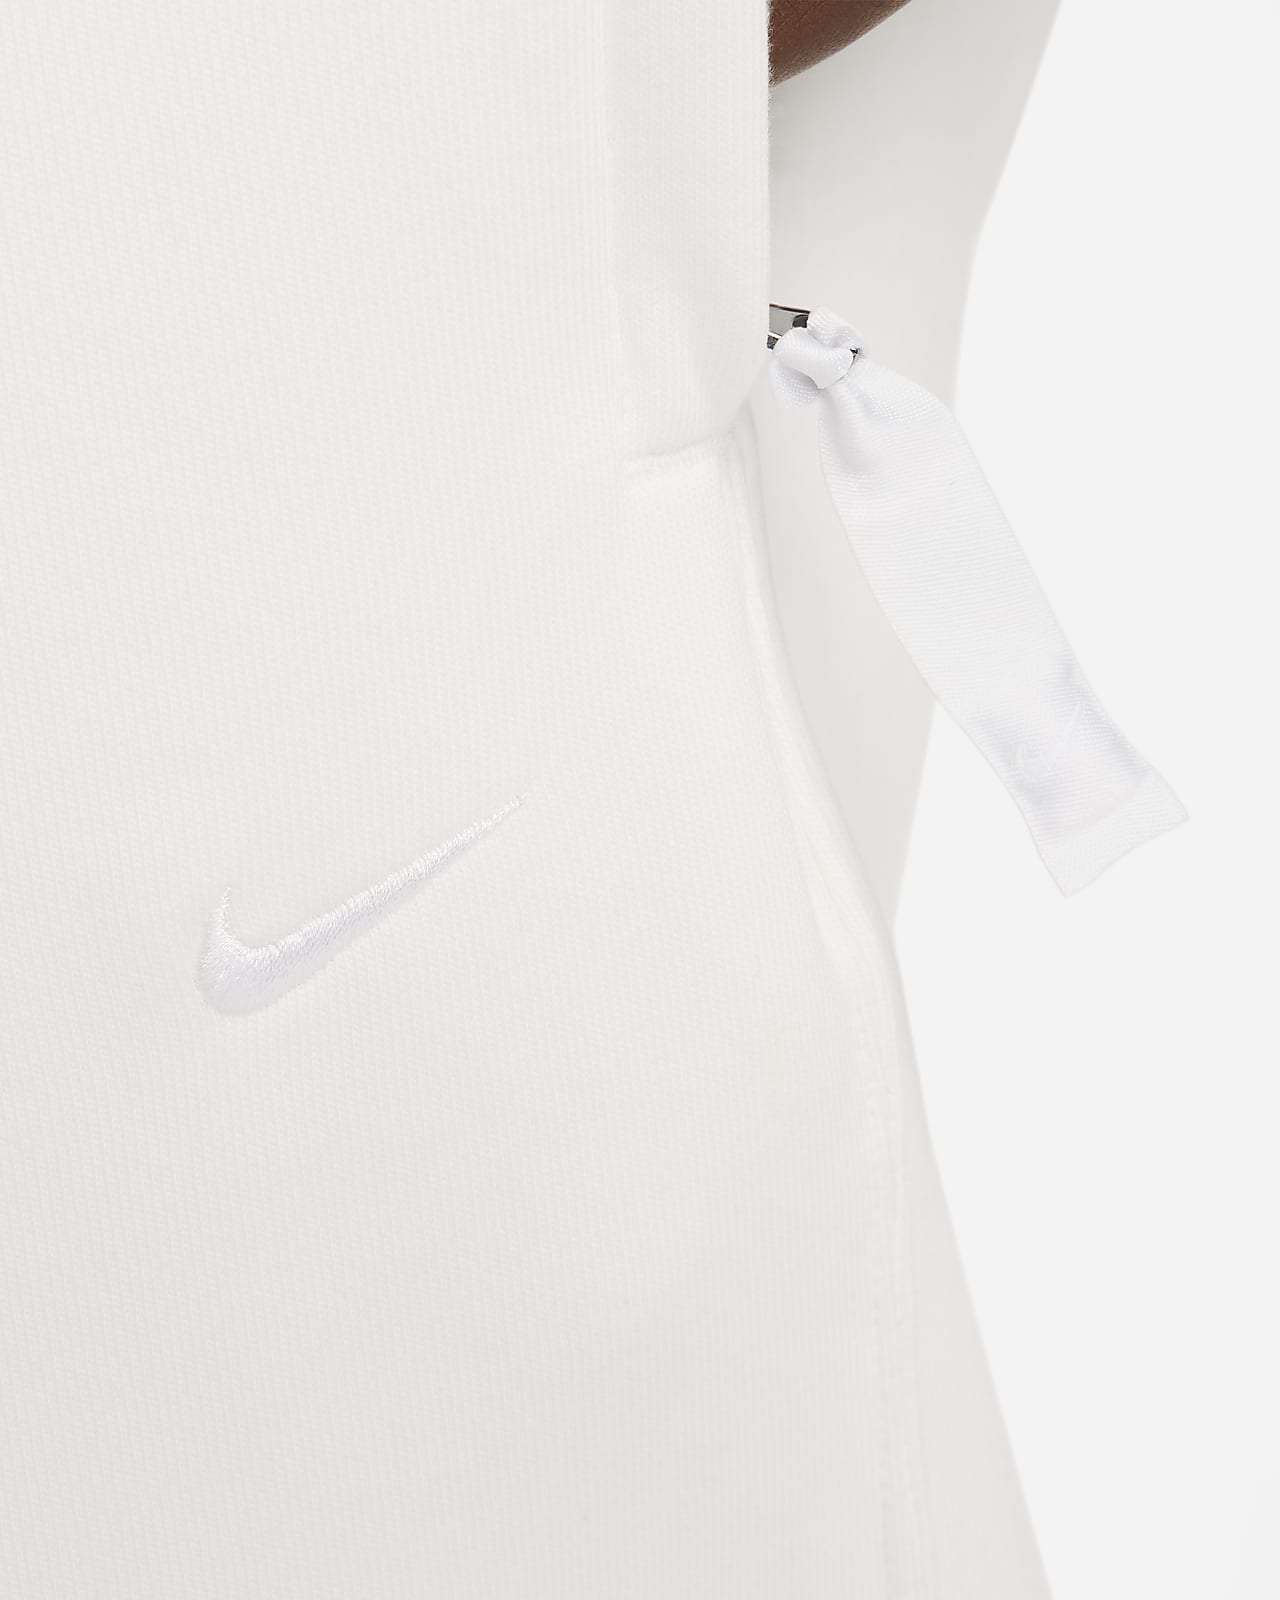 Nike SOLO SWOOSH Brushed-Back FLEECE Open-Hem Pants, FN3342-063